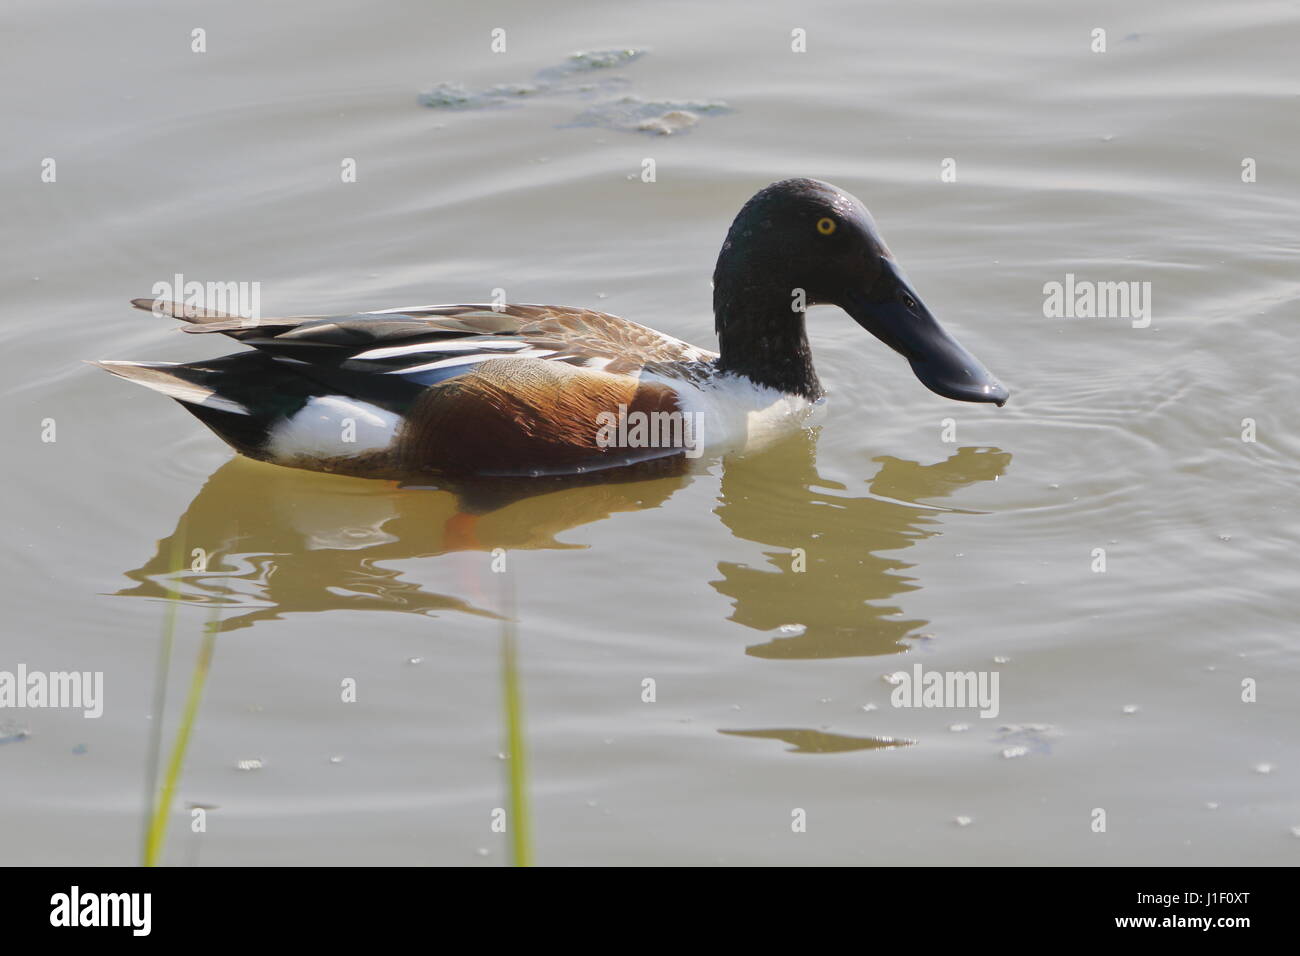 Shoveler duck at RSPB Titchwell Marsh; UK Stock Photo